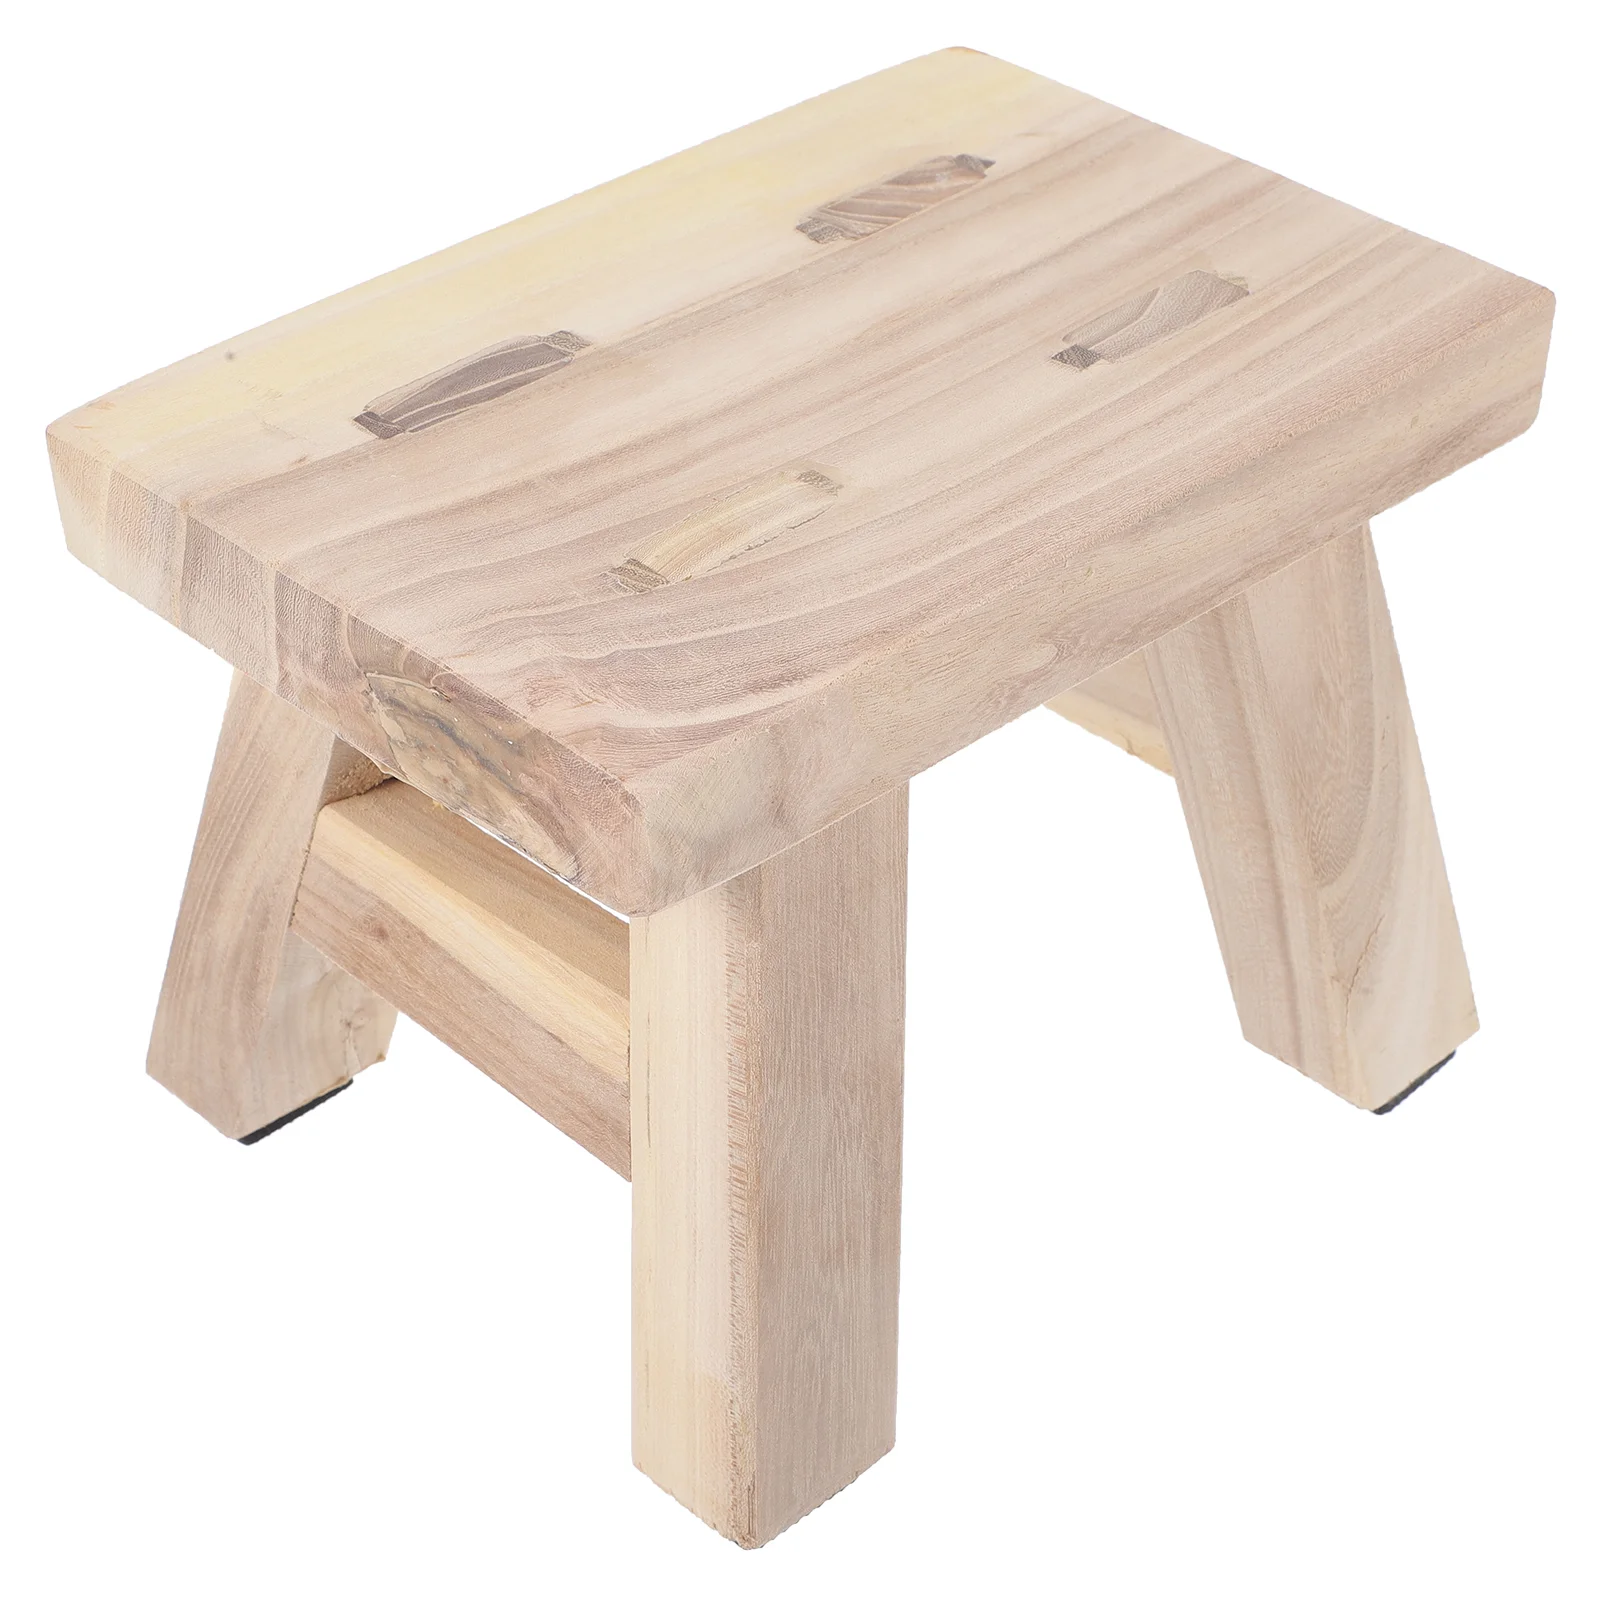 

Скамейка из цельной древесины, маленькие деревянные табуреты для ног, мини-ступенчатая скамейка для взрослых, для детей, сидя низко